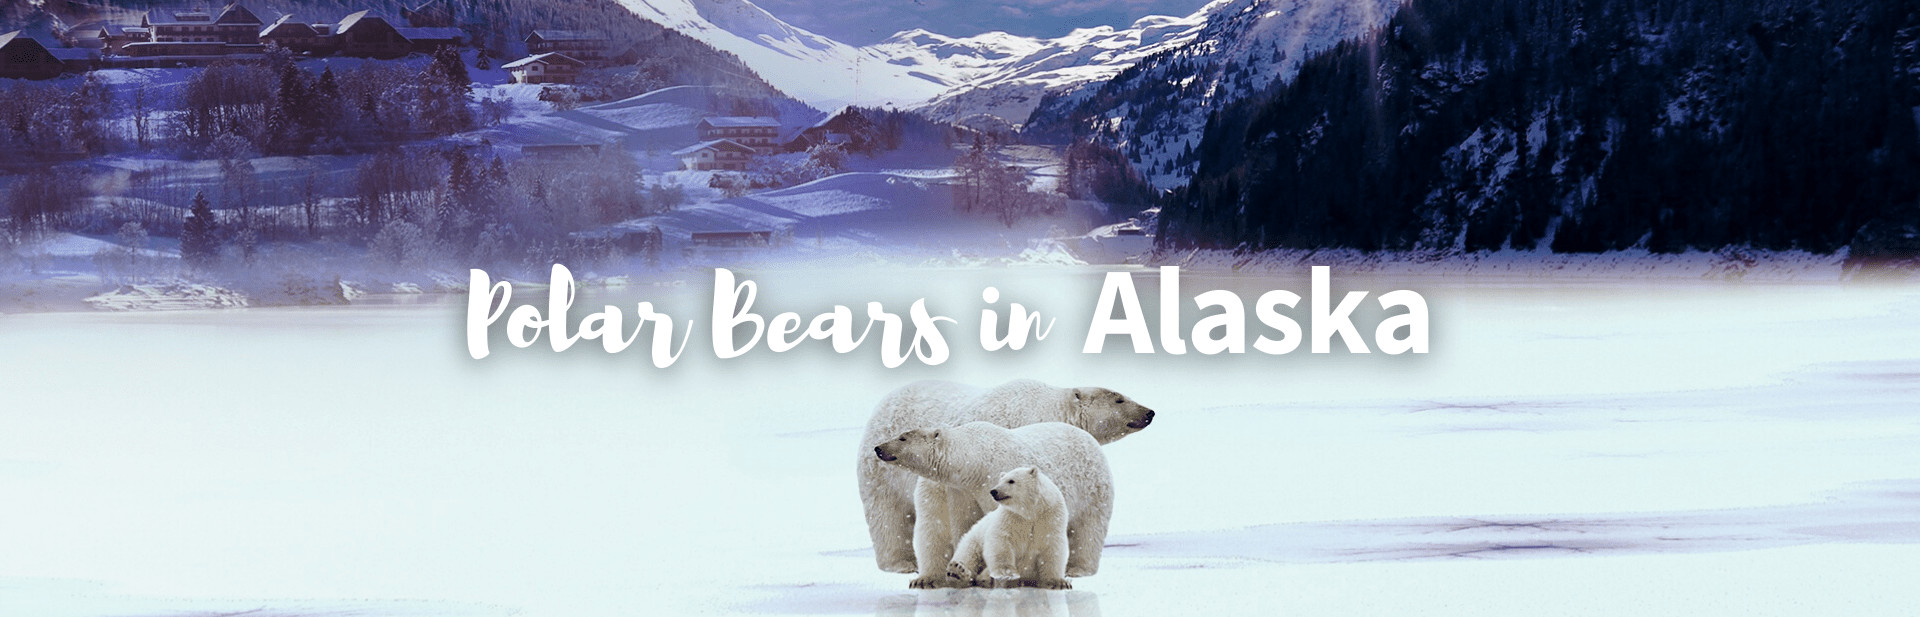 All About Polar Bears in Alaska